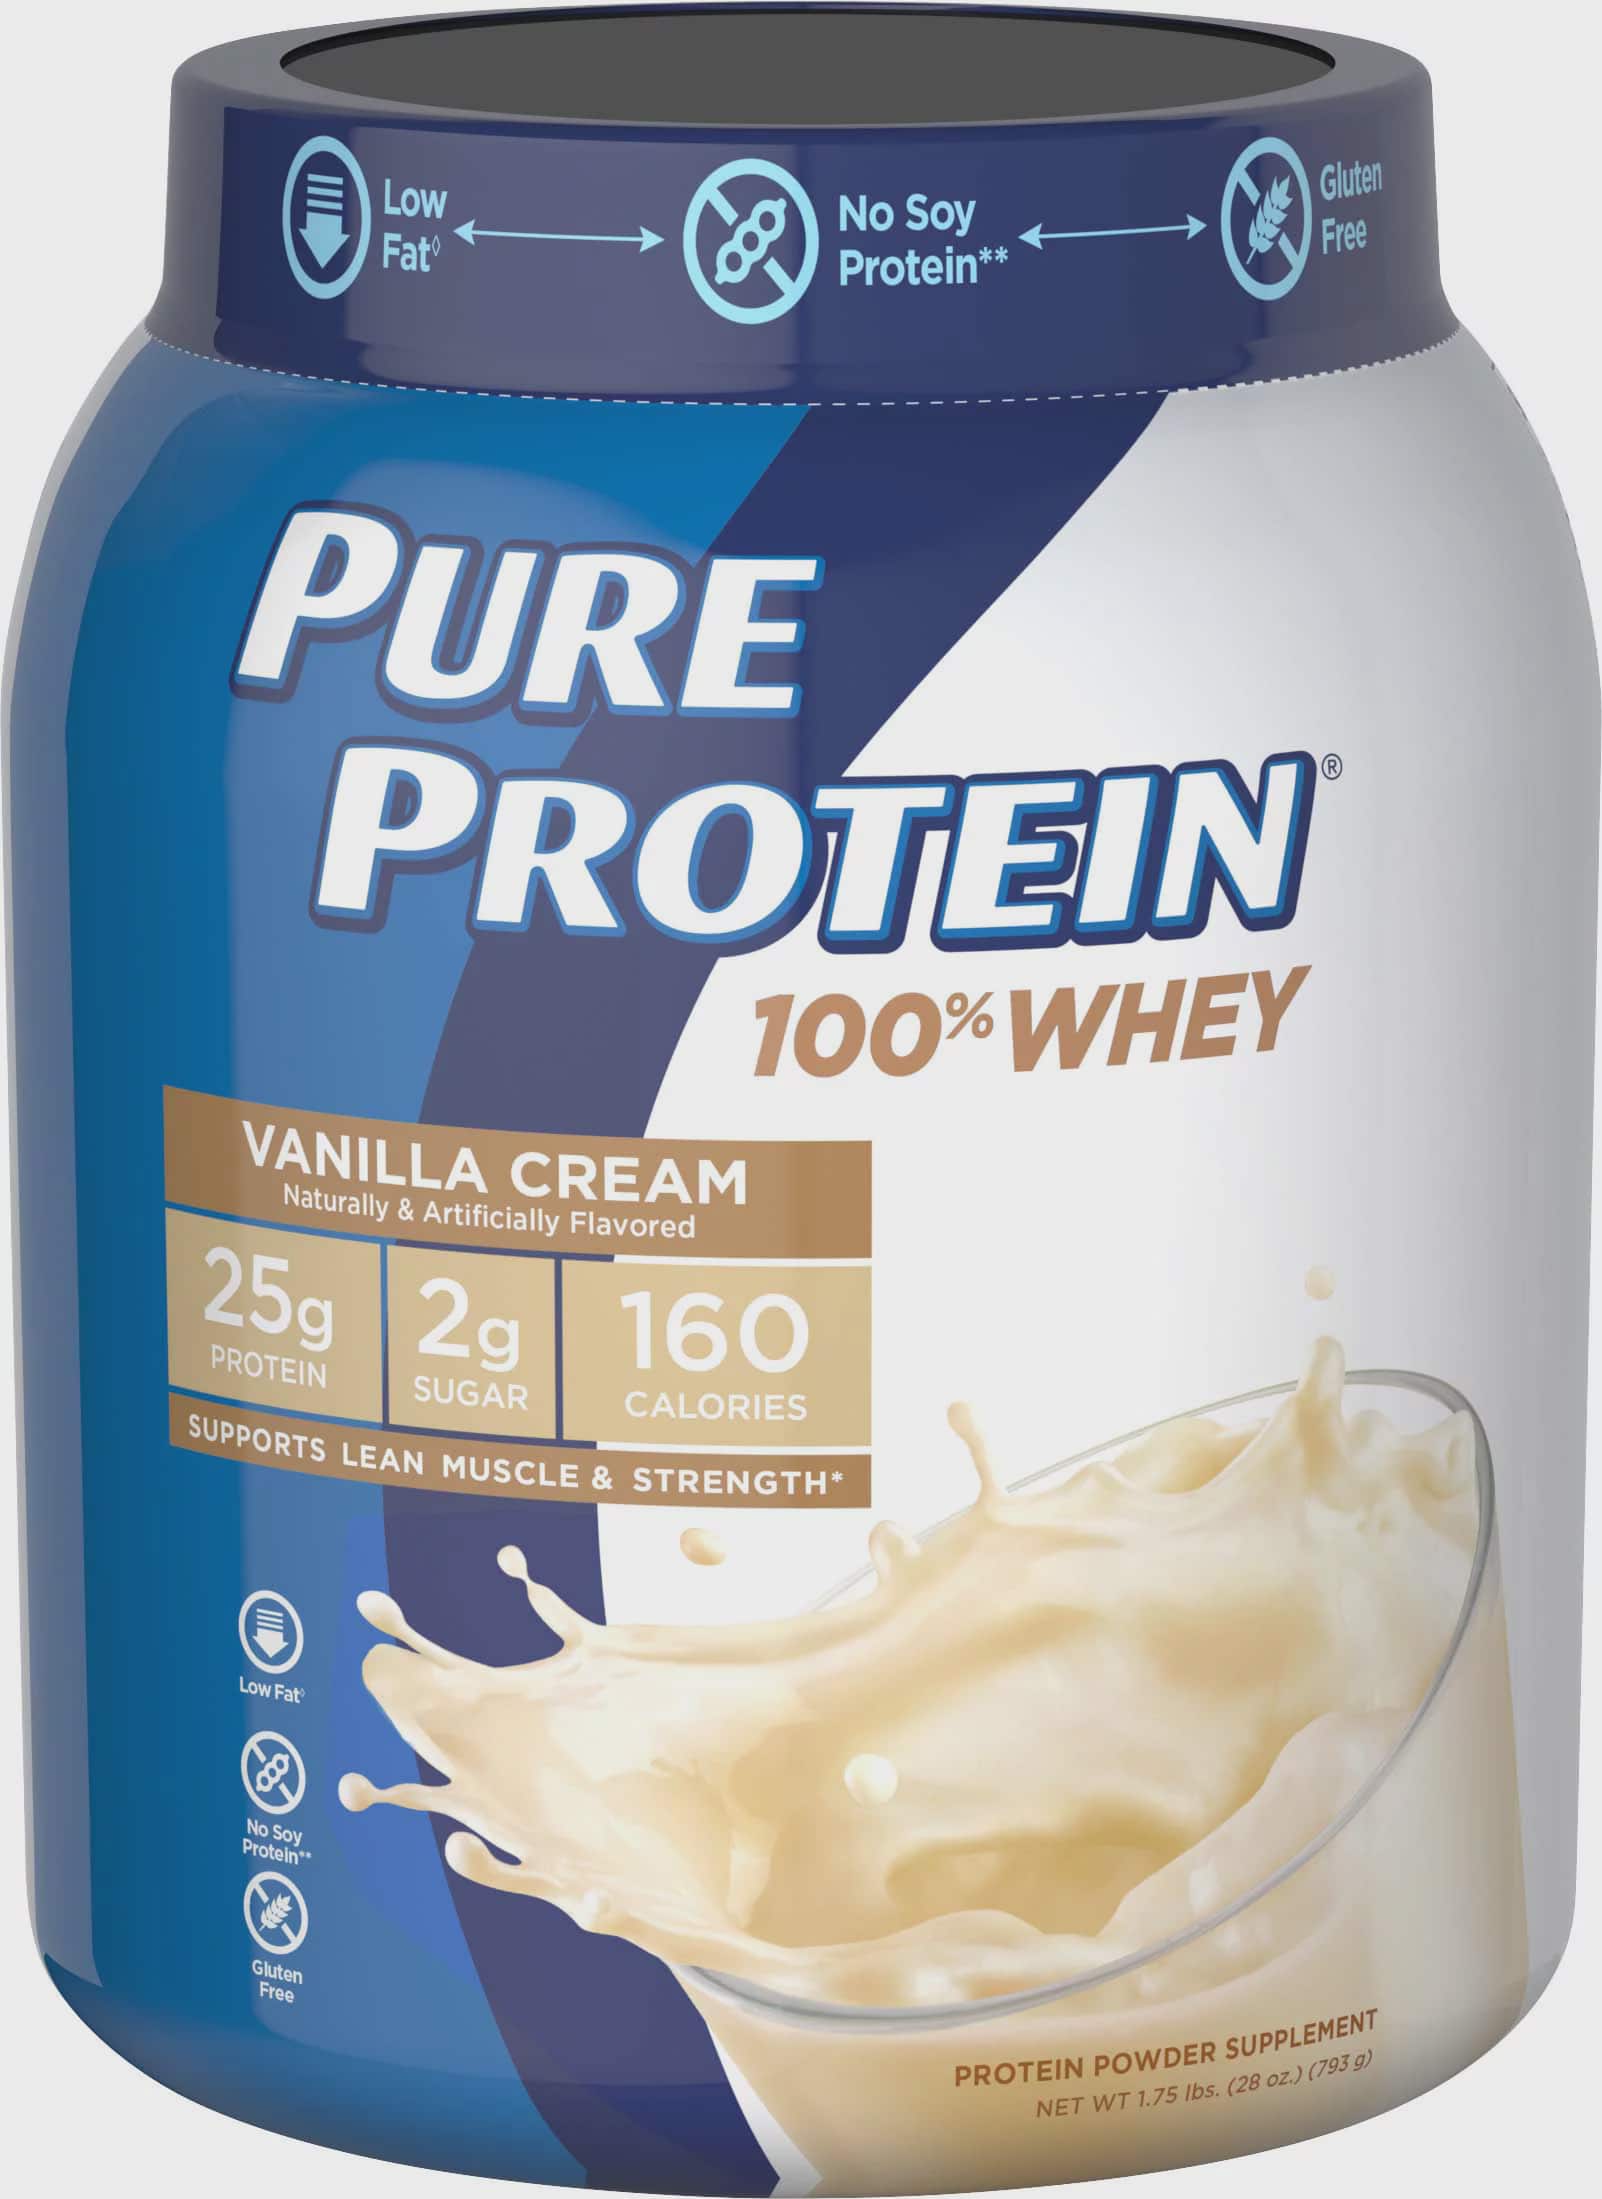 Vanilla Cream Whey Protein Powder, 25g Protein